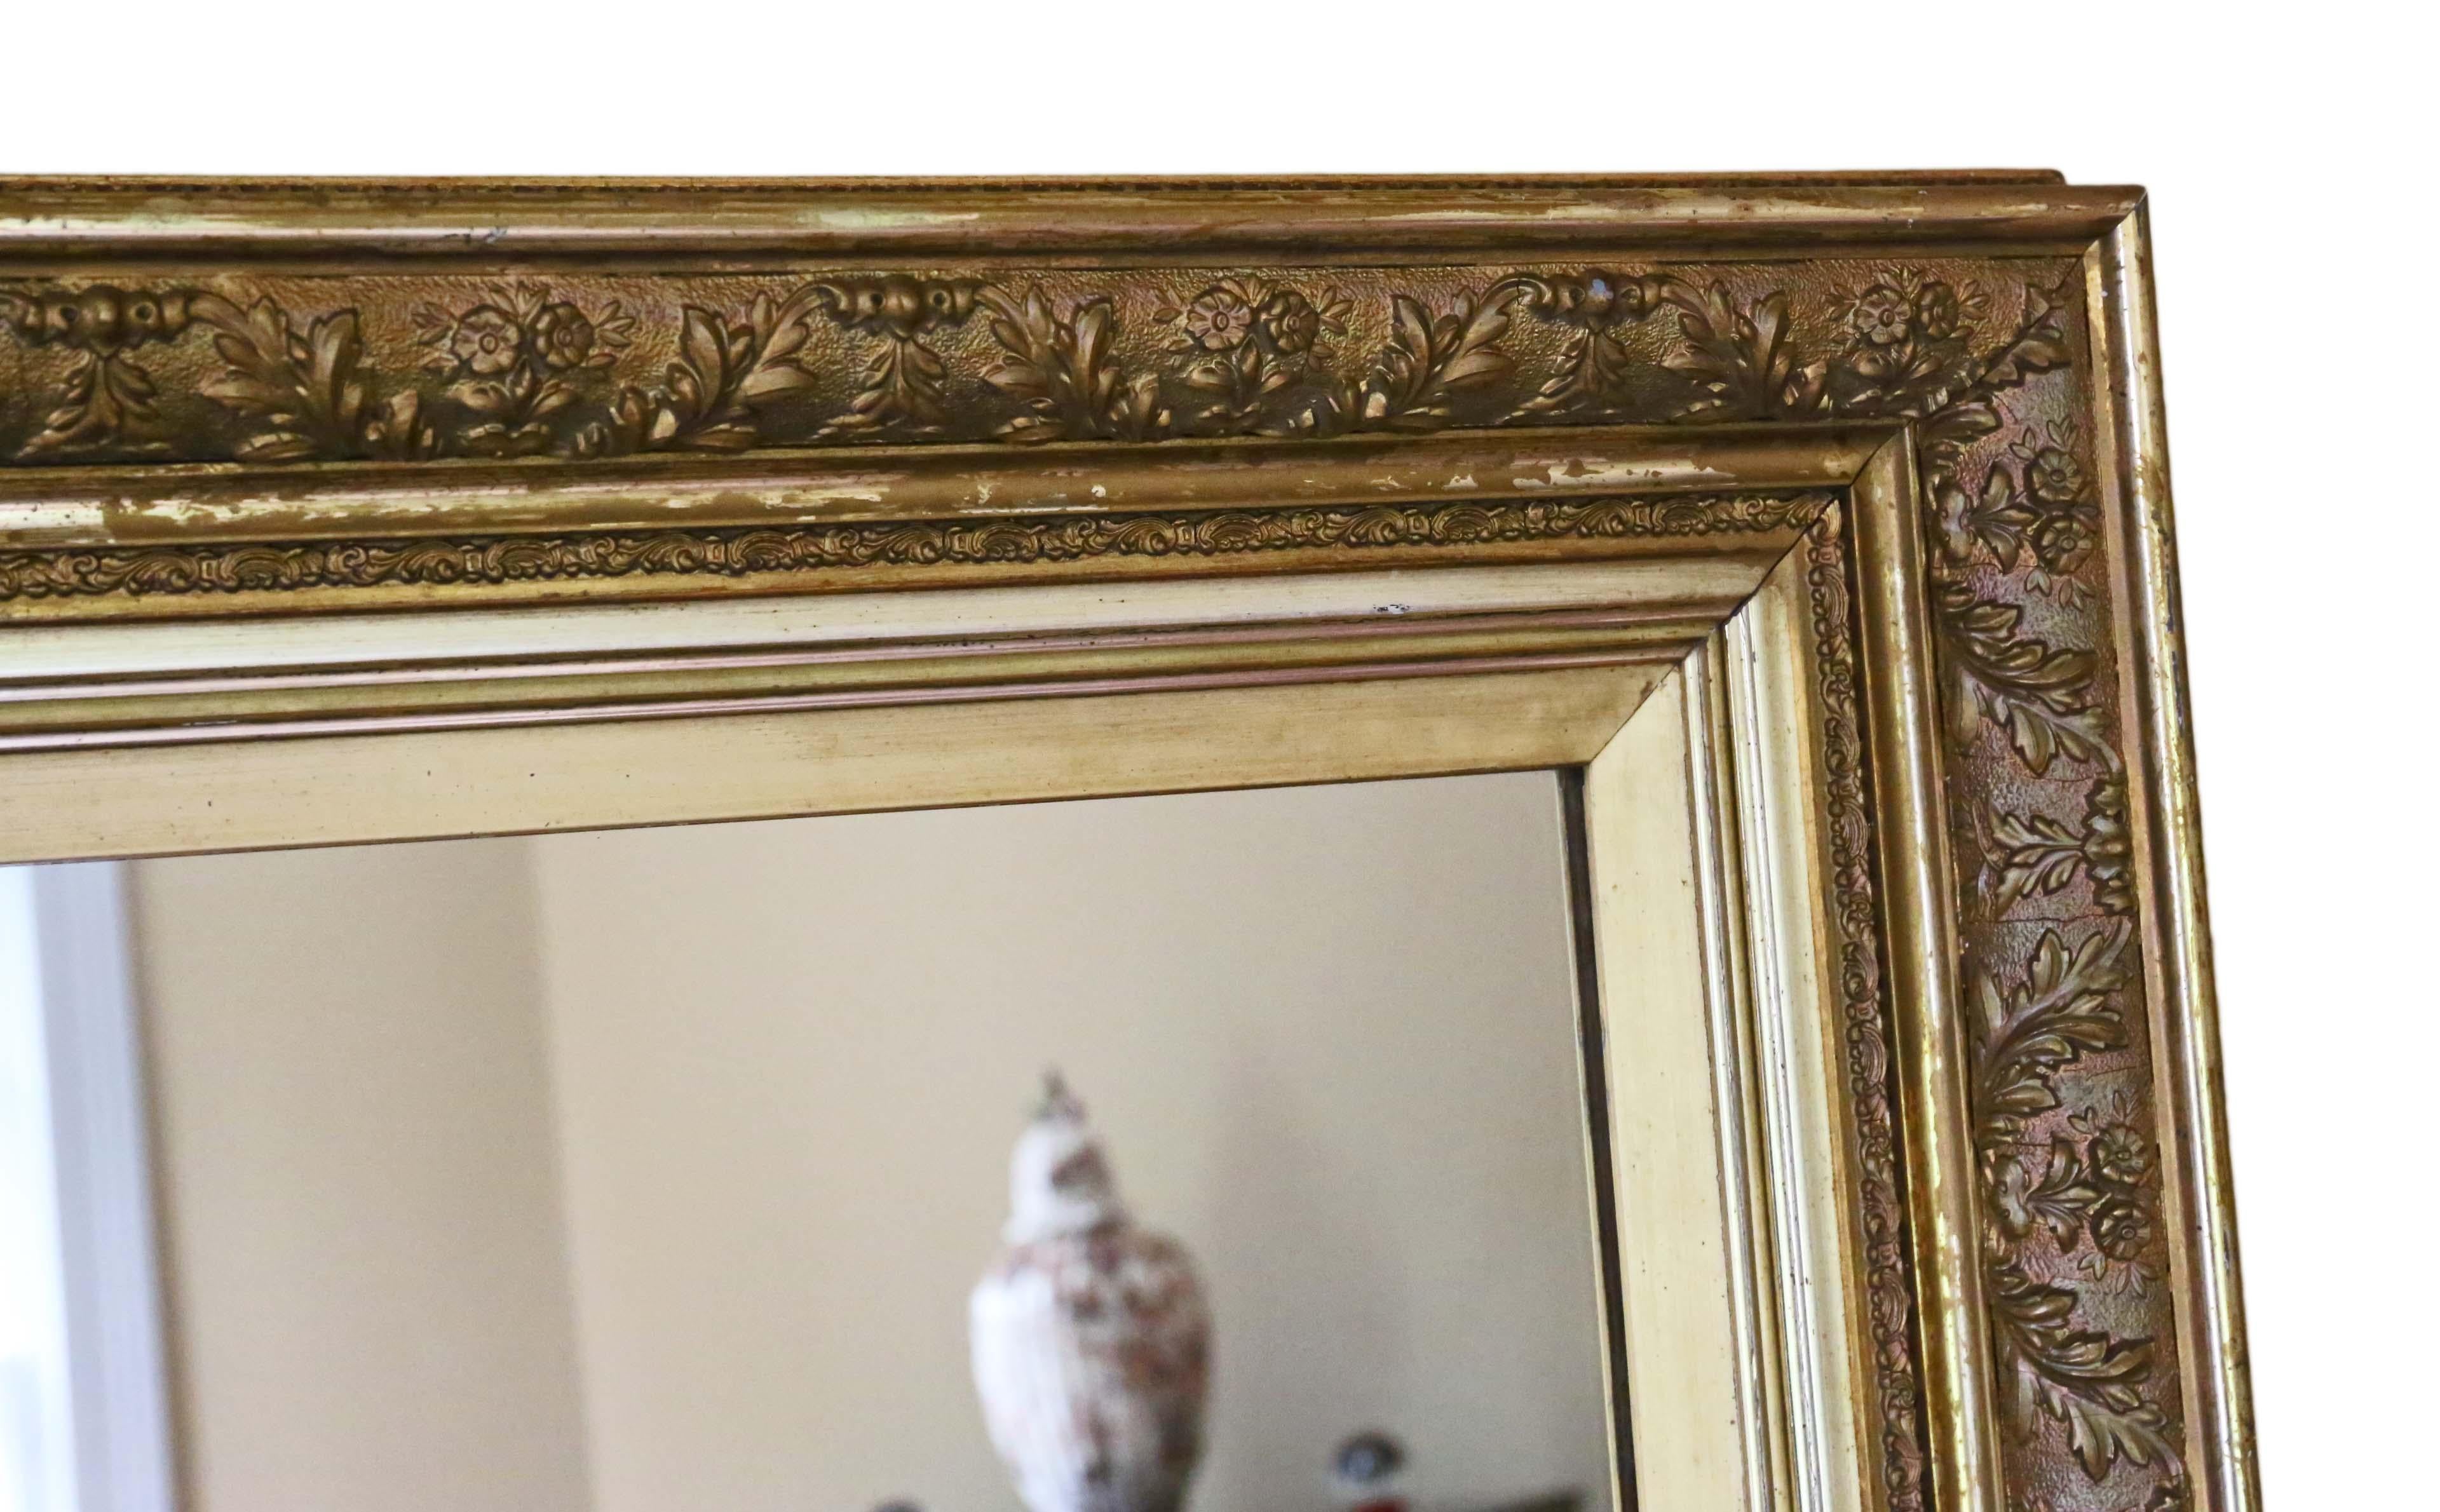 miroir mural ou surmonté d'un manteau doré du XIXe siècle. Un bon look.
Un miroir charmant, qui est plein d'âge et de caractère. Le cadre a sa finition d'origine, avec de l'usure et de la patine. De même, des pertes mineures qui ont été retouchées